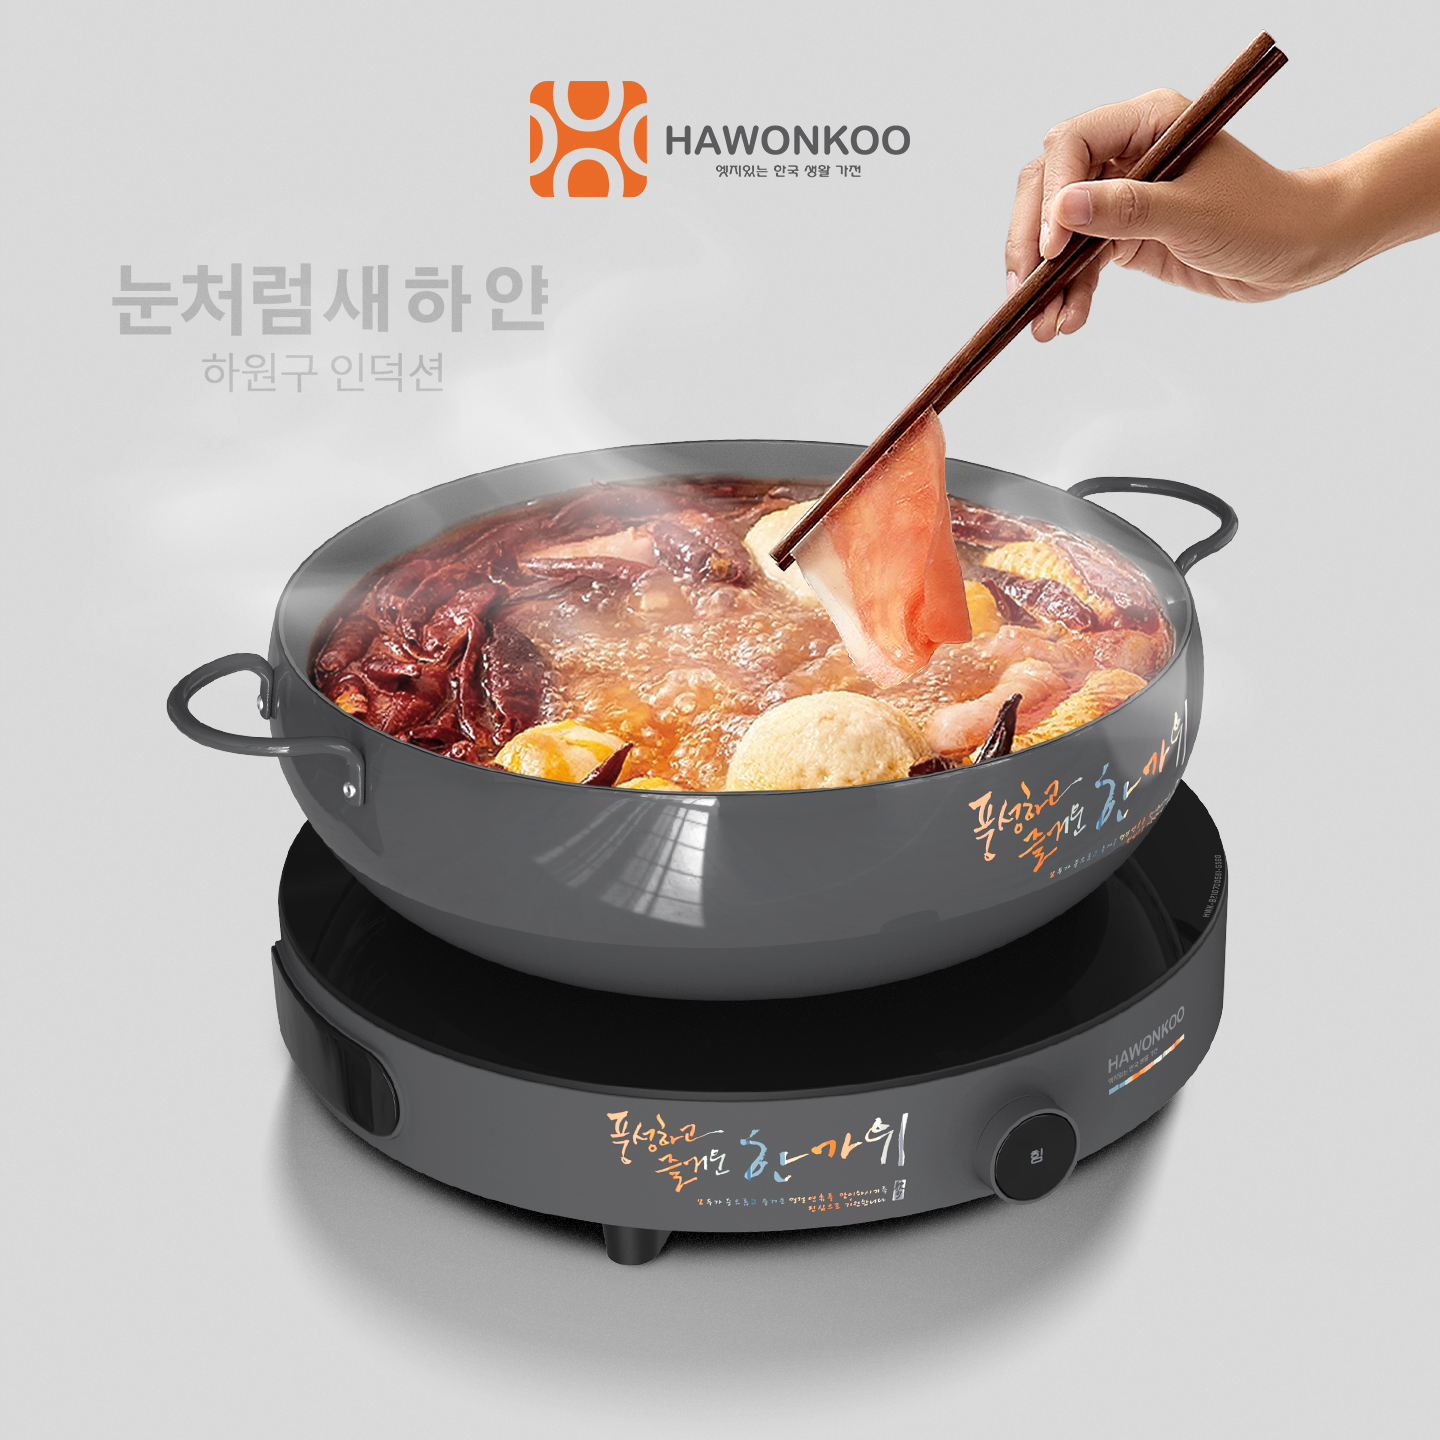 Bếp Từ Đơn HAWONKOO CEH-101-I Kèm Nồi Inventer 2000W Hàng Chính Hãng Bảo Hành 12 Tháng - Thương Hiệu Hàn Quốc